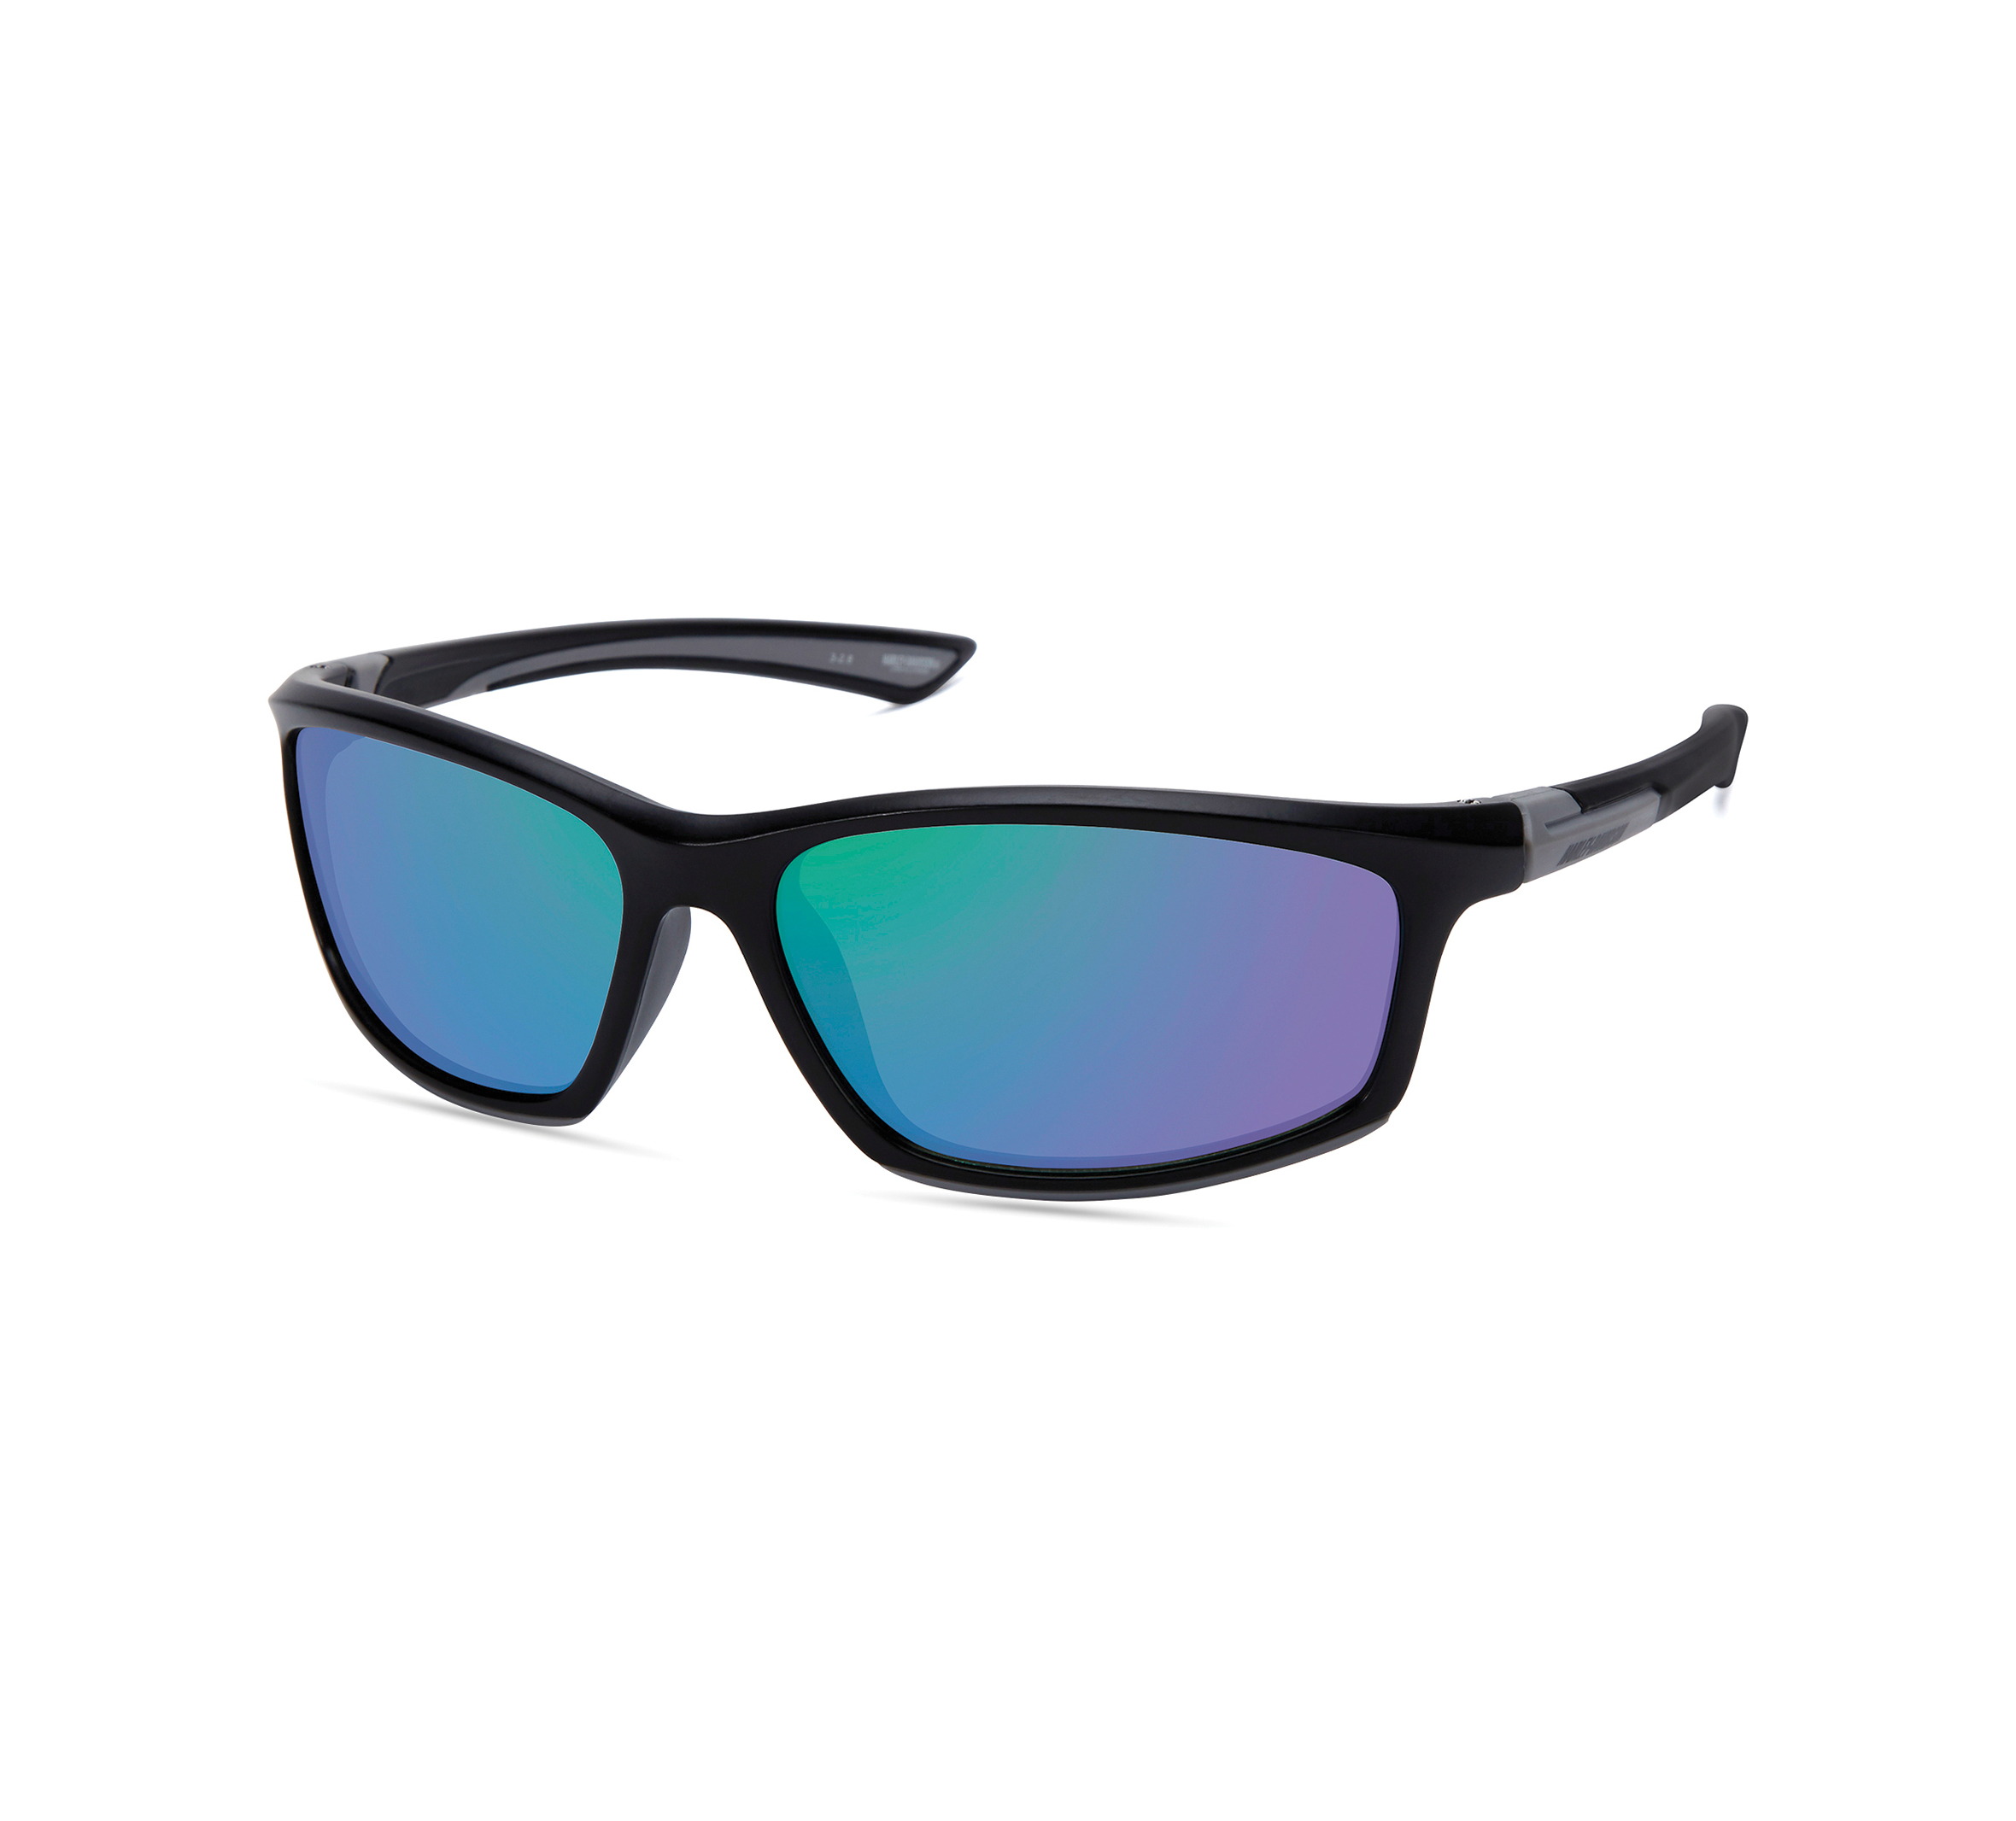 3,50 Titanium Grijs/ Blauw Hd1017 011 0,25 tot Accessoires Zonnebrillen & Eyewear Leesbrillen Harley Davidson Leesbril 